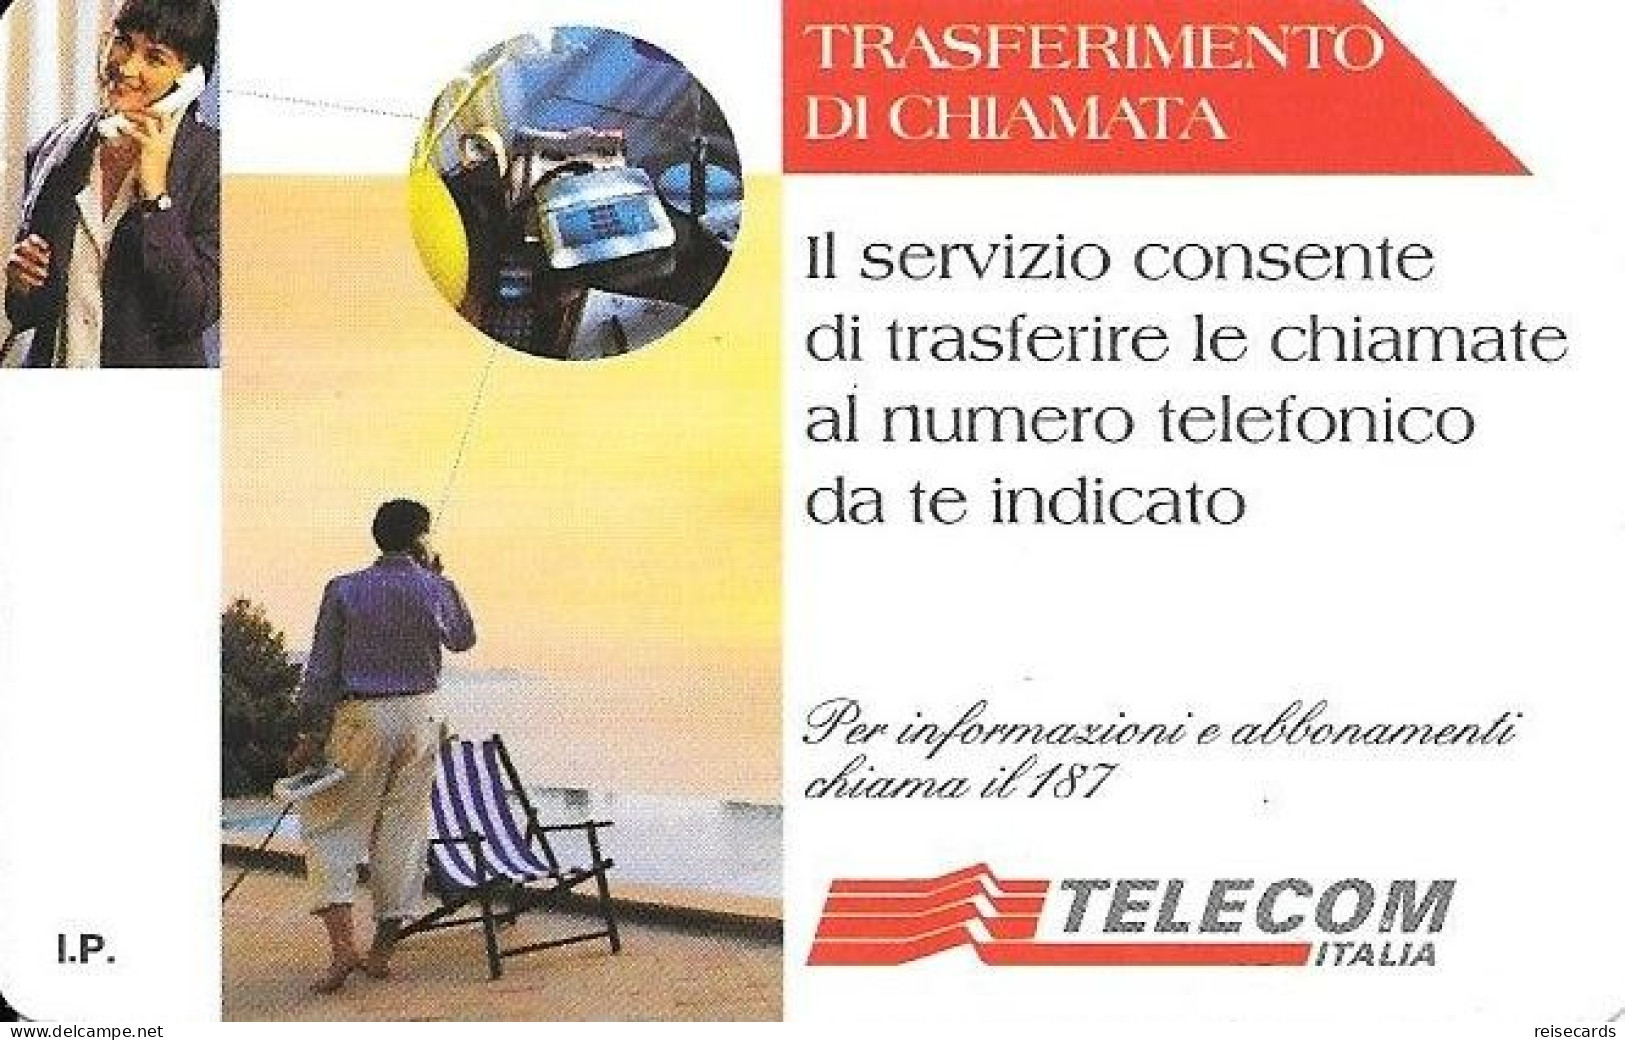 Italy: Telecom Italia - Trasferimento Di Chiamata - Public Advertising